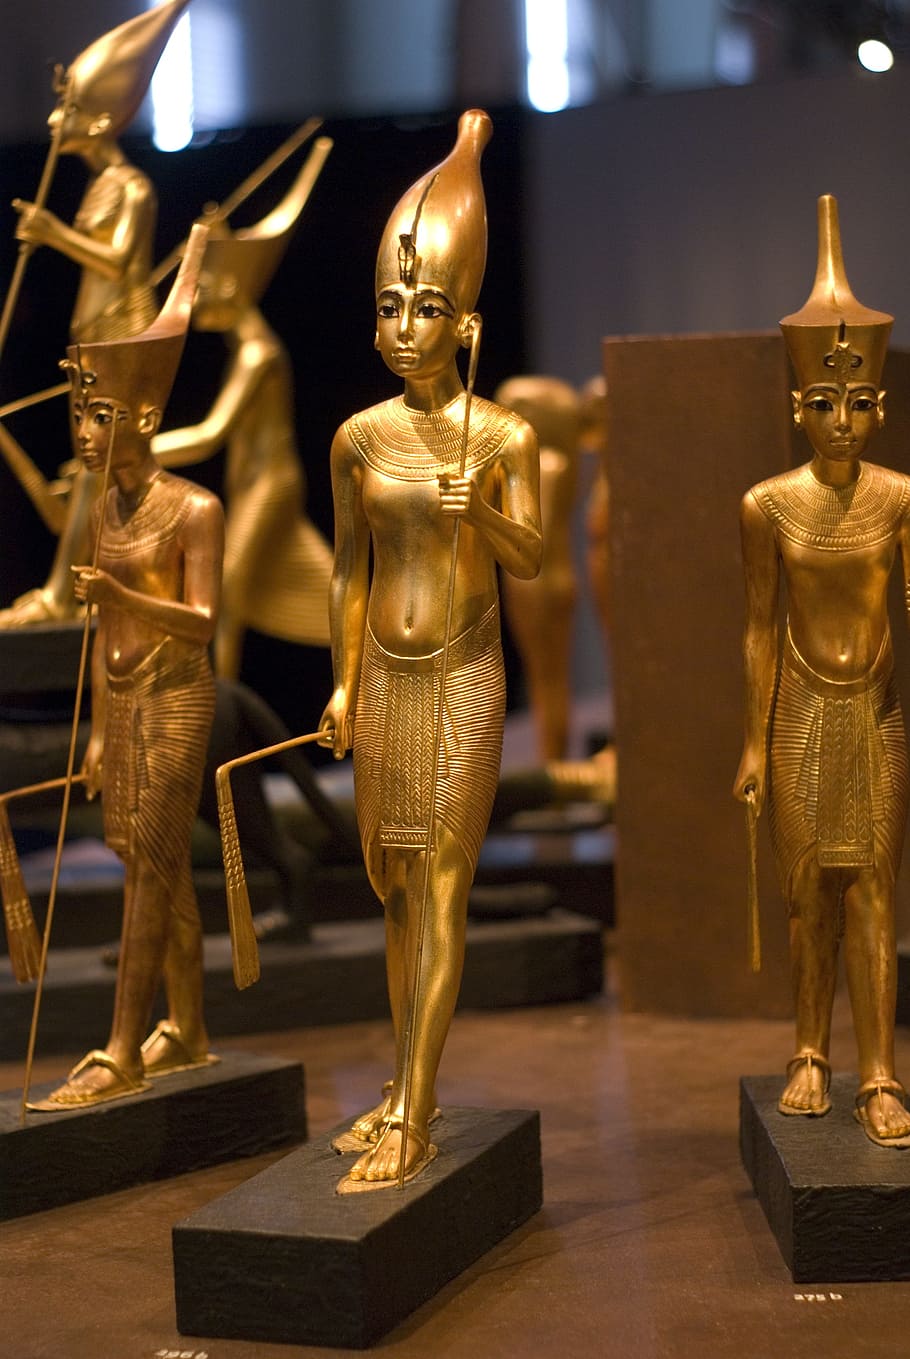 makam, tutankhamun, mesir, representasi manusia, patung, seni dan kerajinan, representasi, berwarna emas, persamaan pria, arsitektur